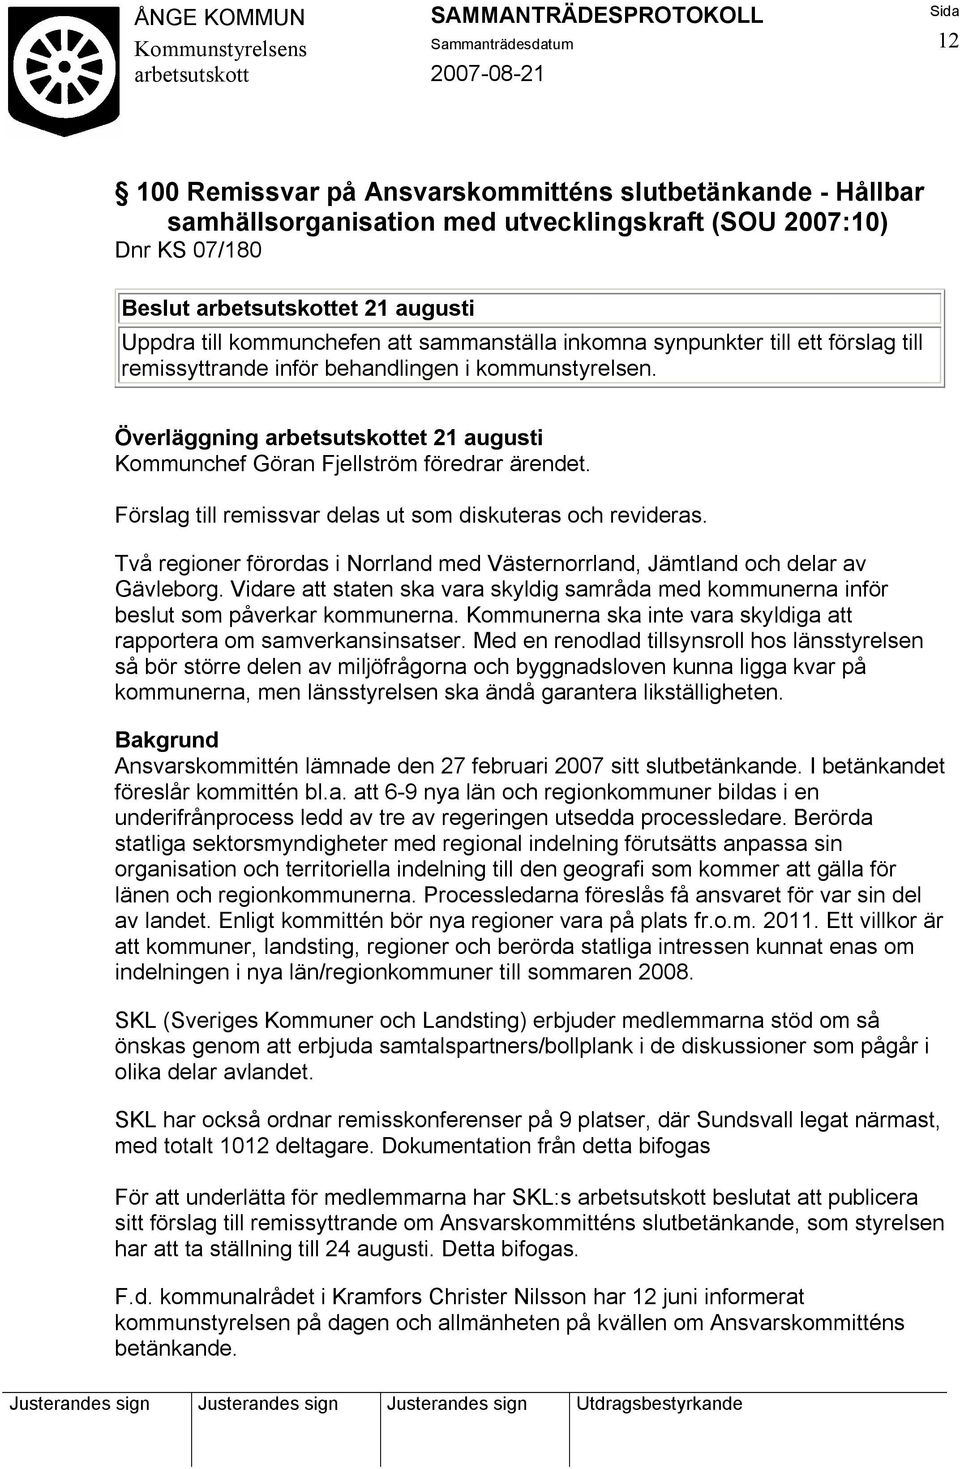 Förslag till remissvar delas ut som diskuteras och revideras. Två regioner förordas i Norrland med Västernorrland, Jämtland och delar av Gävleborg.